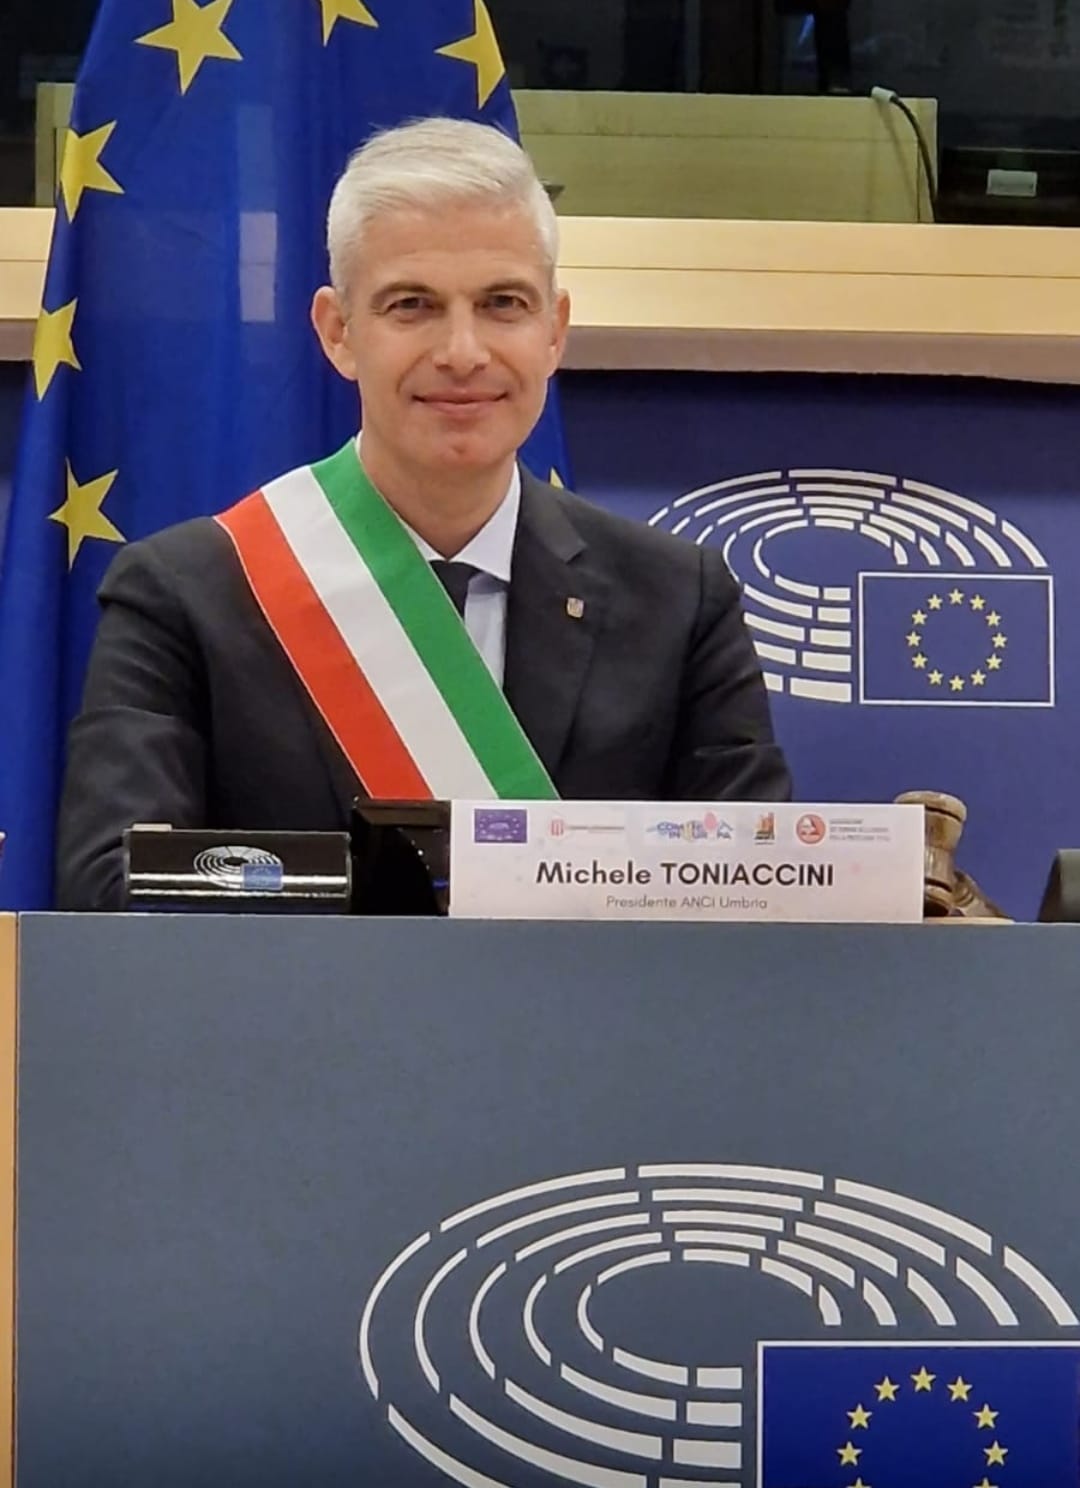 Michele Toniaccini